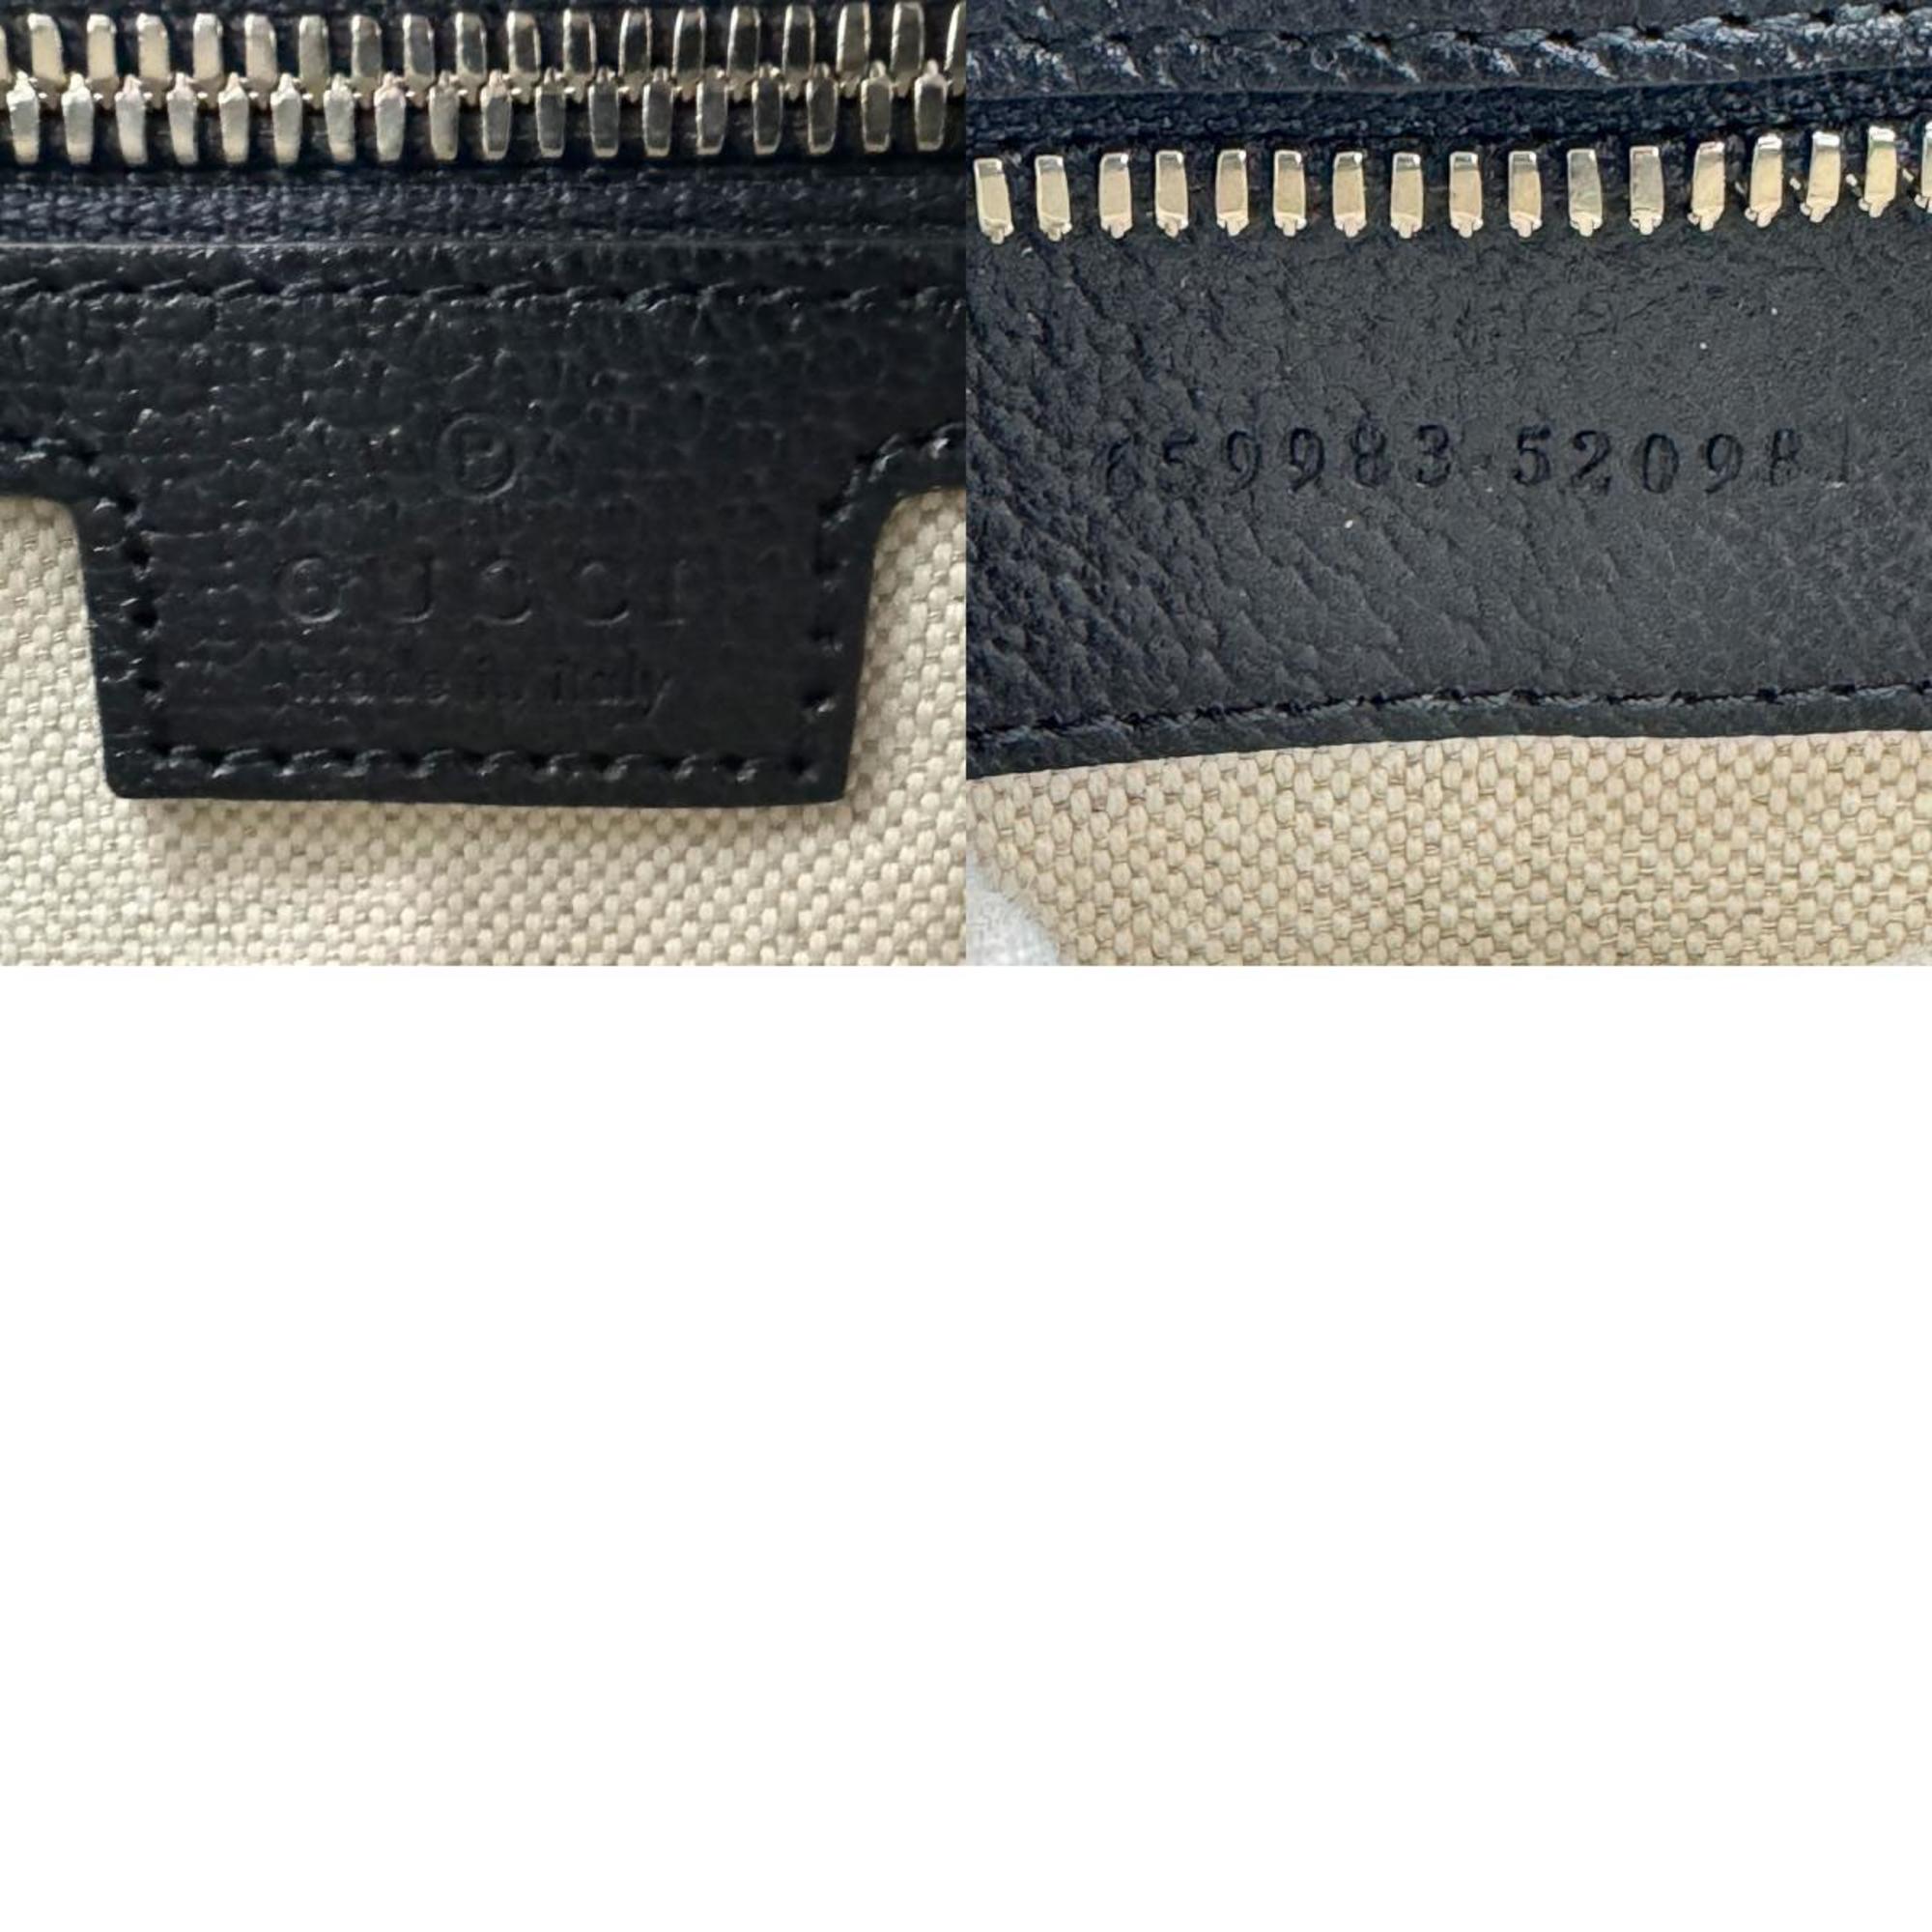 GUCCI Handbag Shoulder Bag GG Supreme Leather Navy Women's 659983 z1151